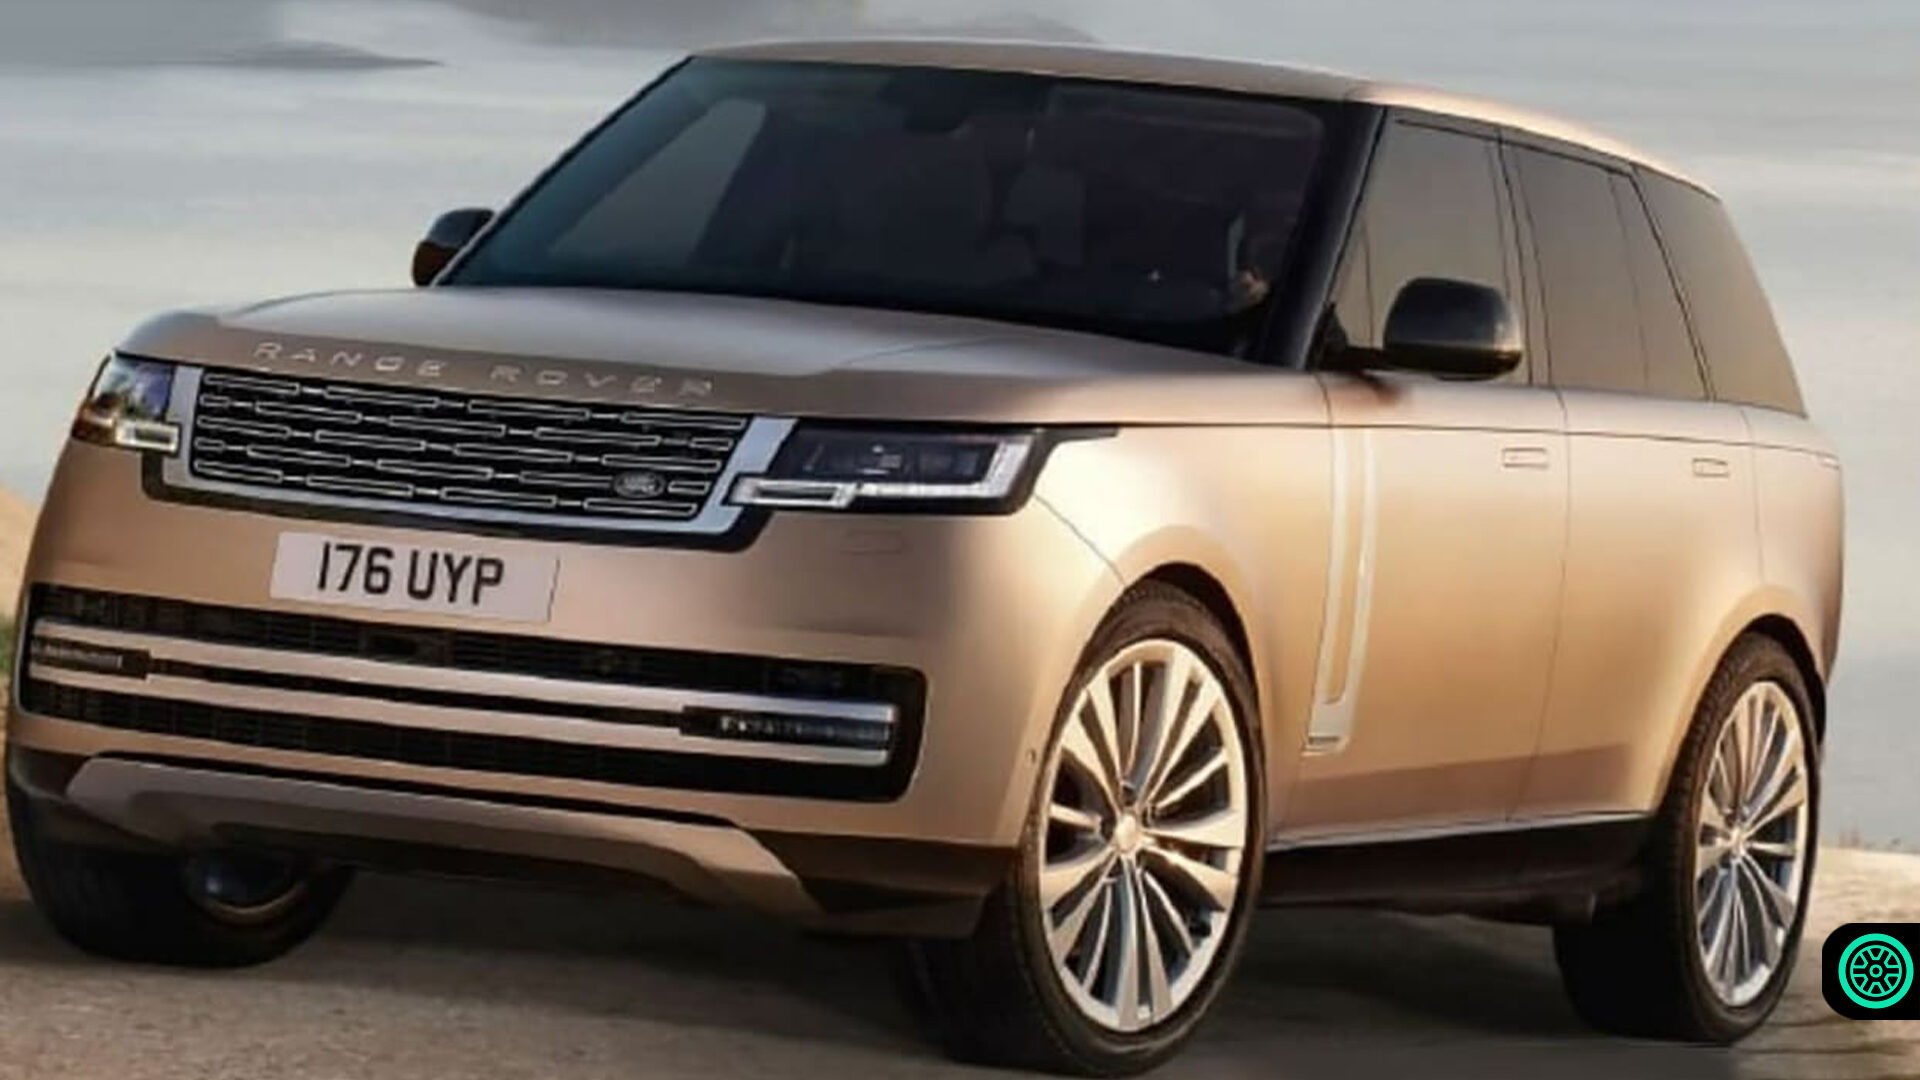 2022 Range Rover modeline yönelik olan görseller bizlerle 1